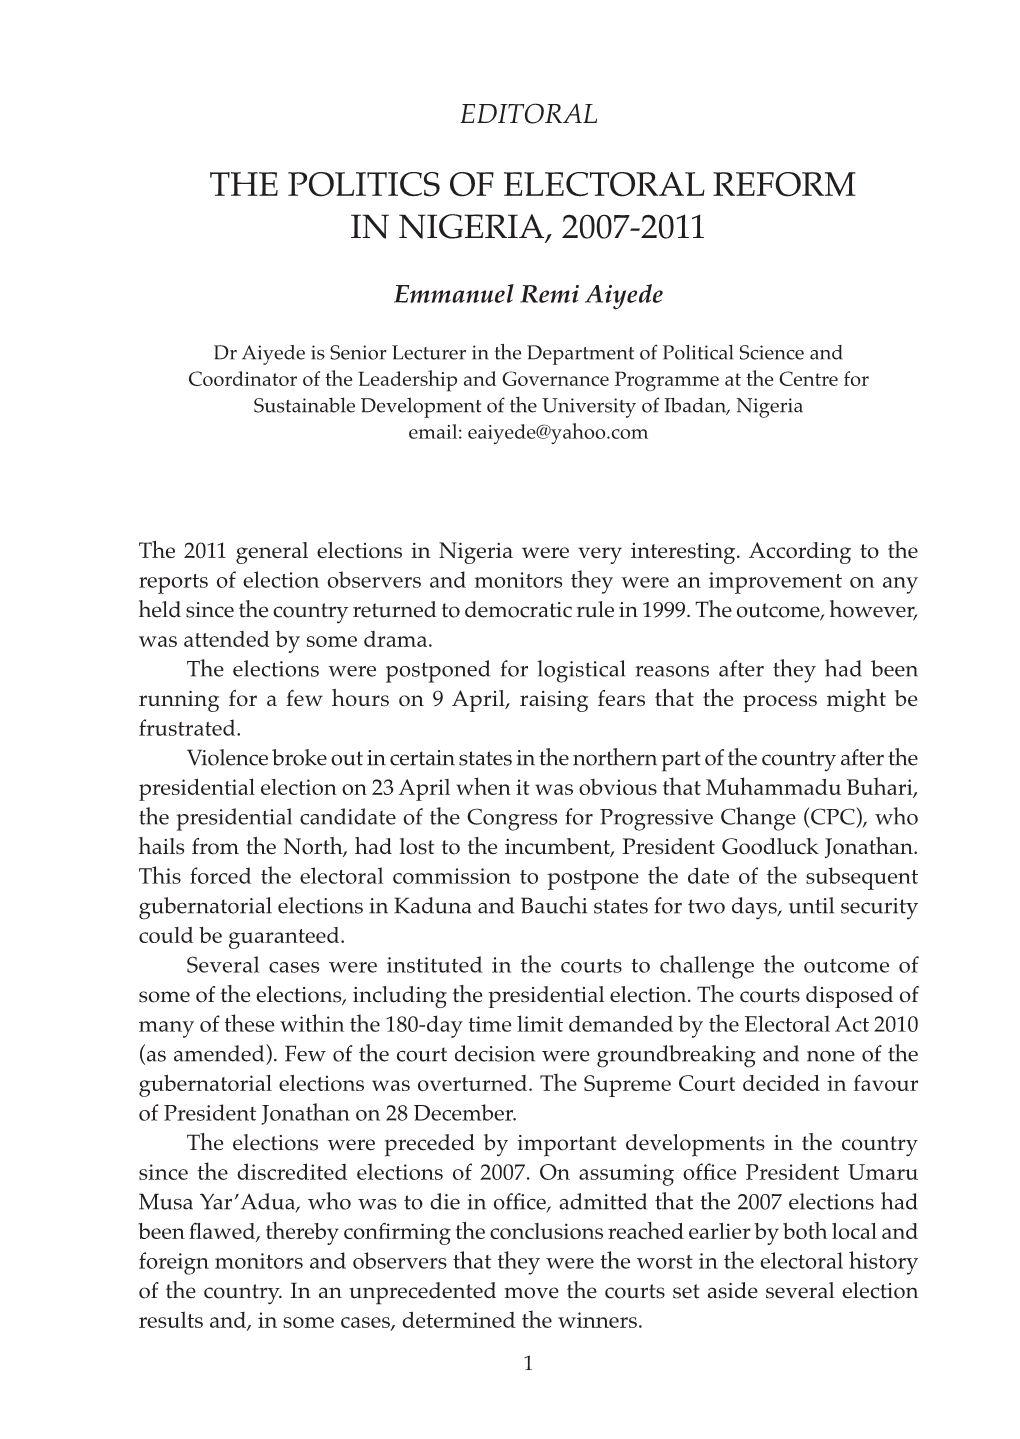 The Politics of Electoral Reform in Nigeria, 2007-2011